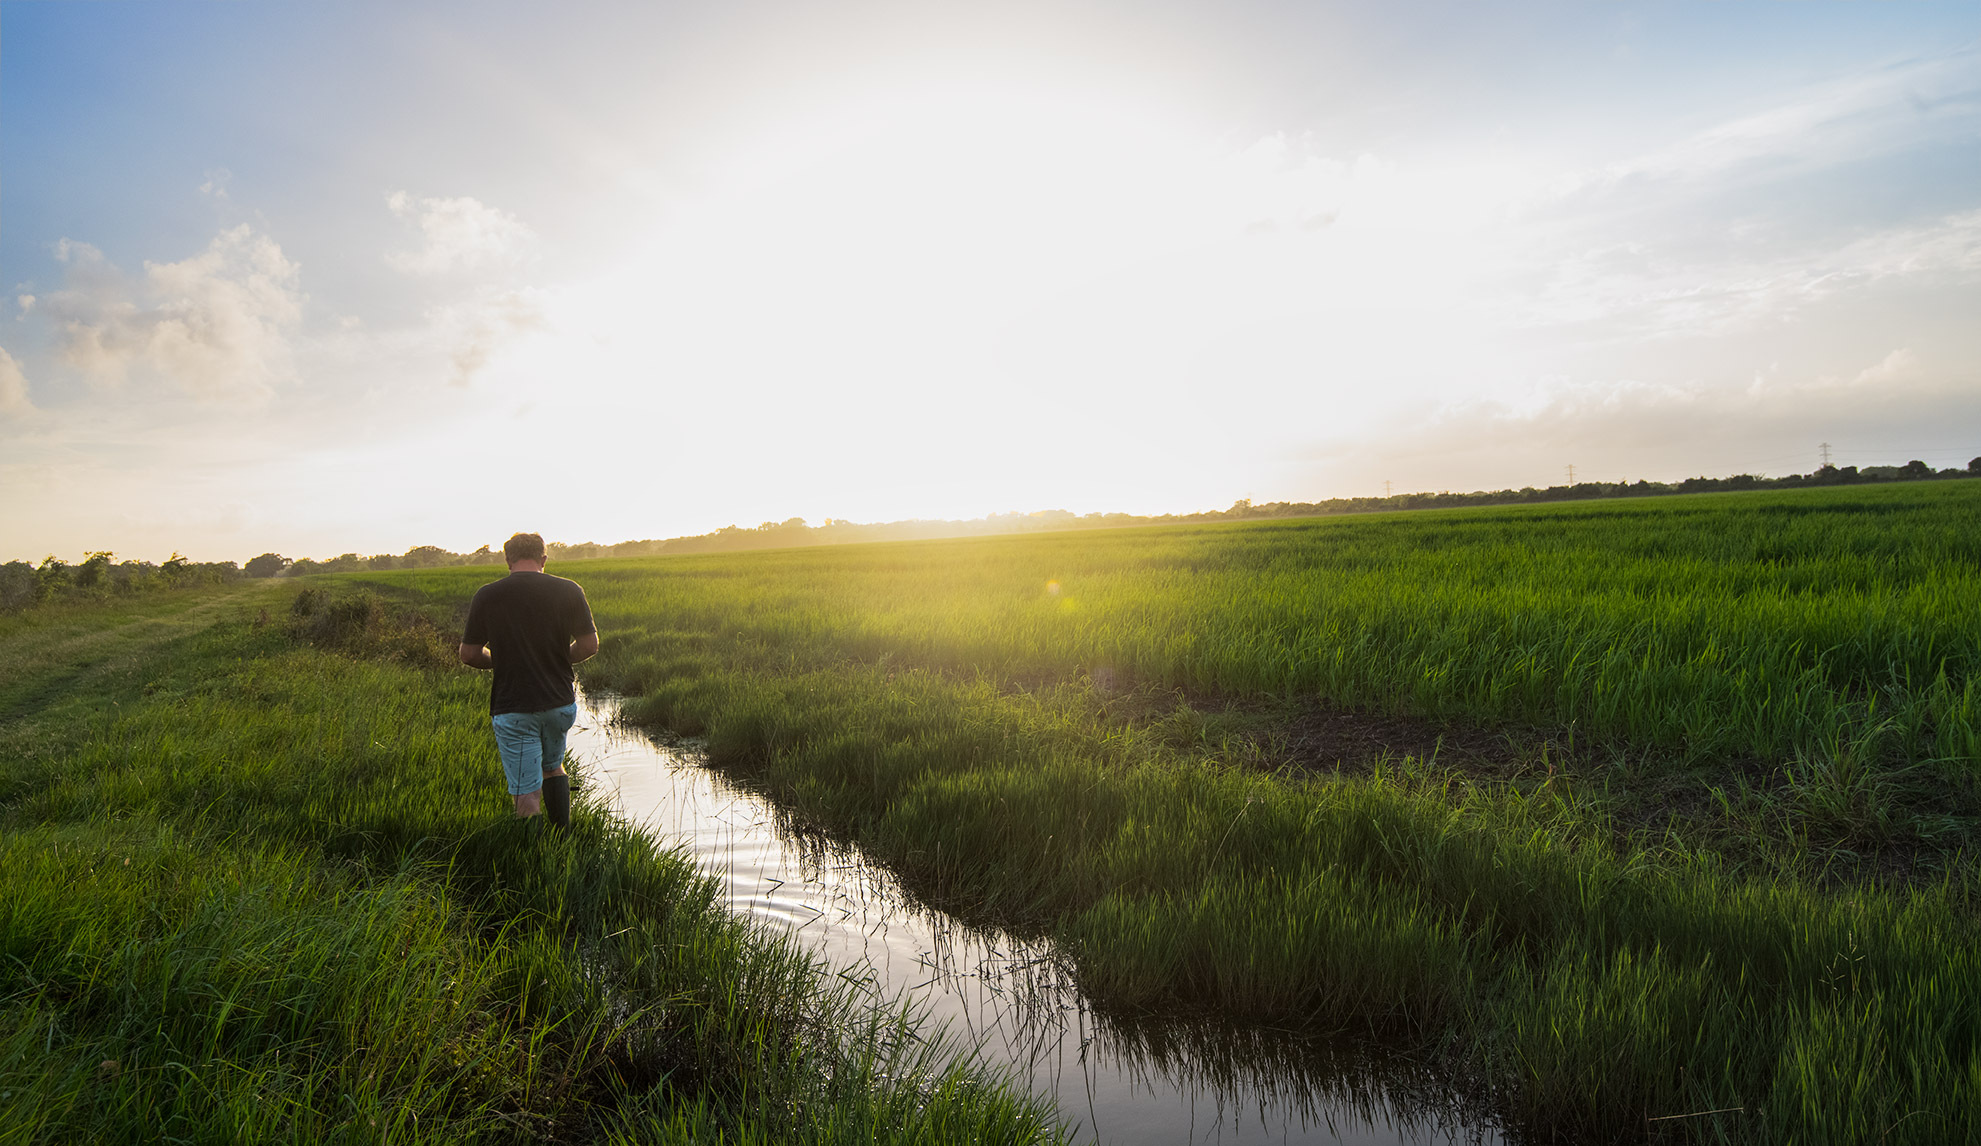 Walking the Rice Fields